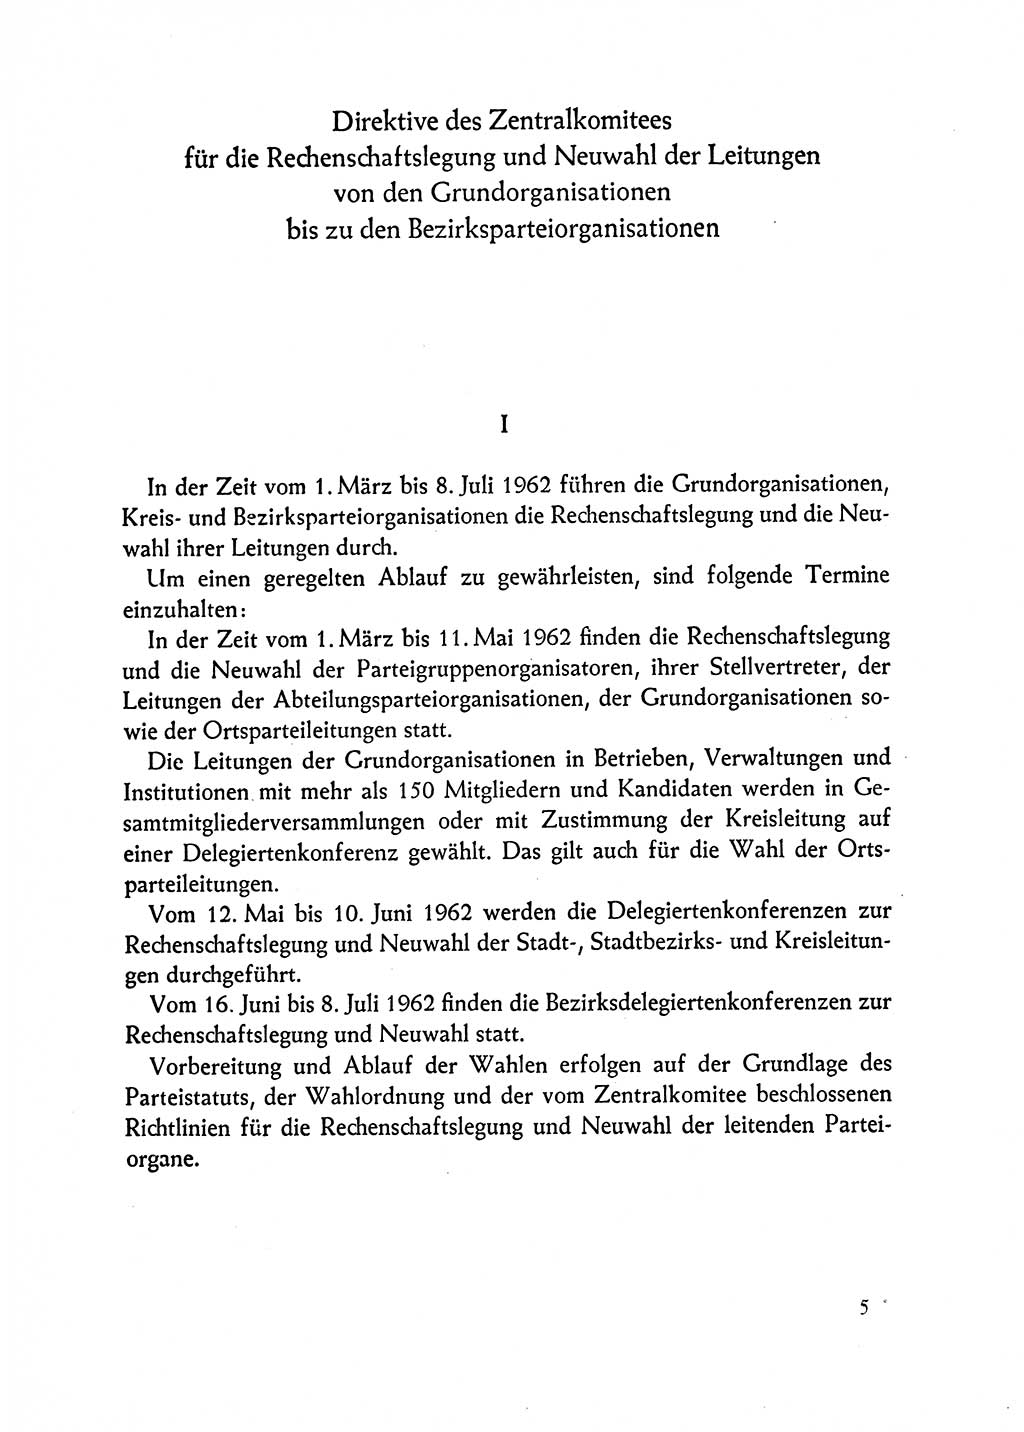 Dokumente der Sozialistischen Einheitspartei Deutschlands (SED) [Deutsche Demokratische Republik (DDR)] 1962-1963, Seite 5 (Dok. SED DDR 1962-1963, S. 5)